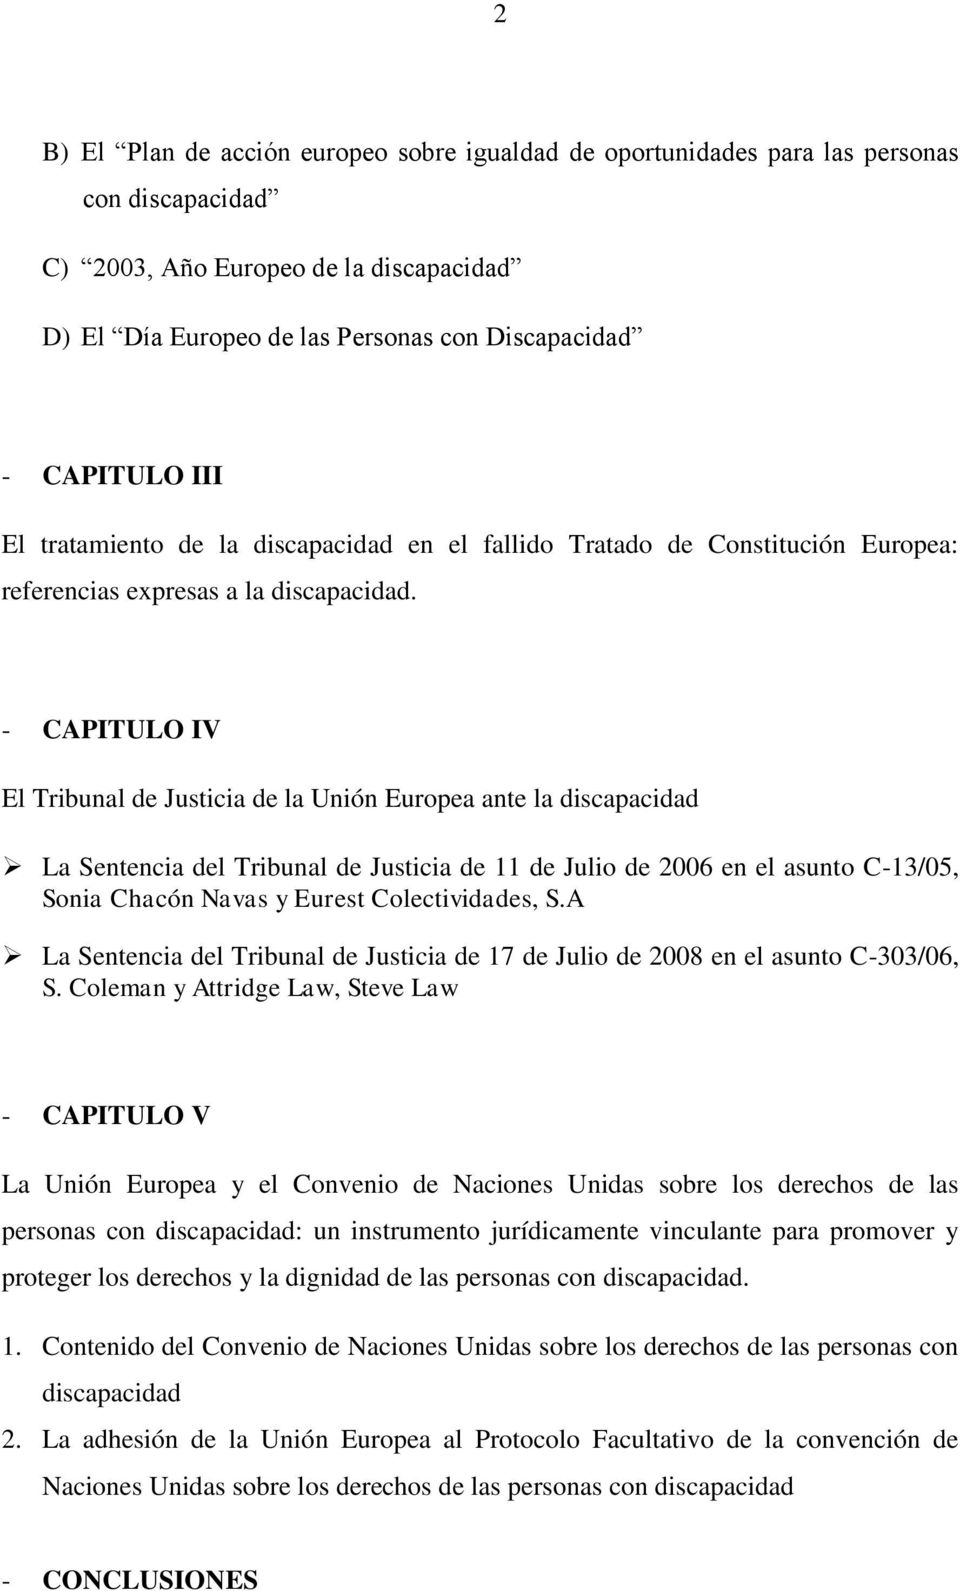 - CAPITULO IV El Tribunal de Justicia de la Unión Europea ante la discapacidad La Sentencia del Tribunal de Justicia de 11 de Julio de 2006 en el asunto C-13/05, Sonia Chacón Navas y Eurest